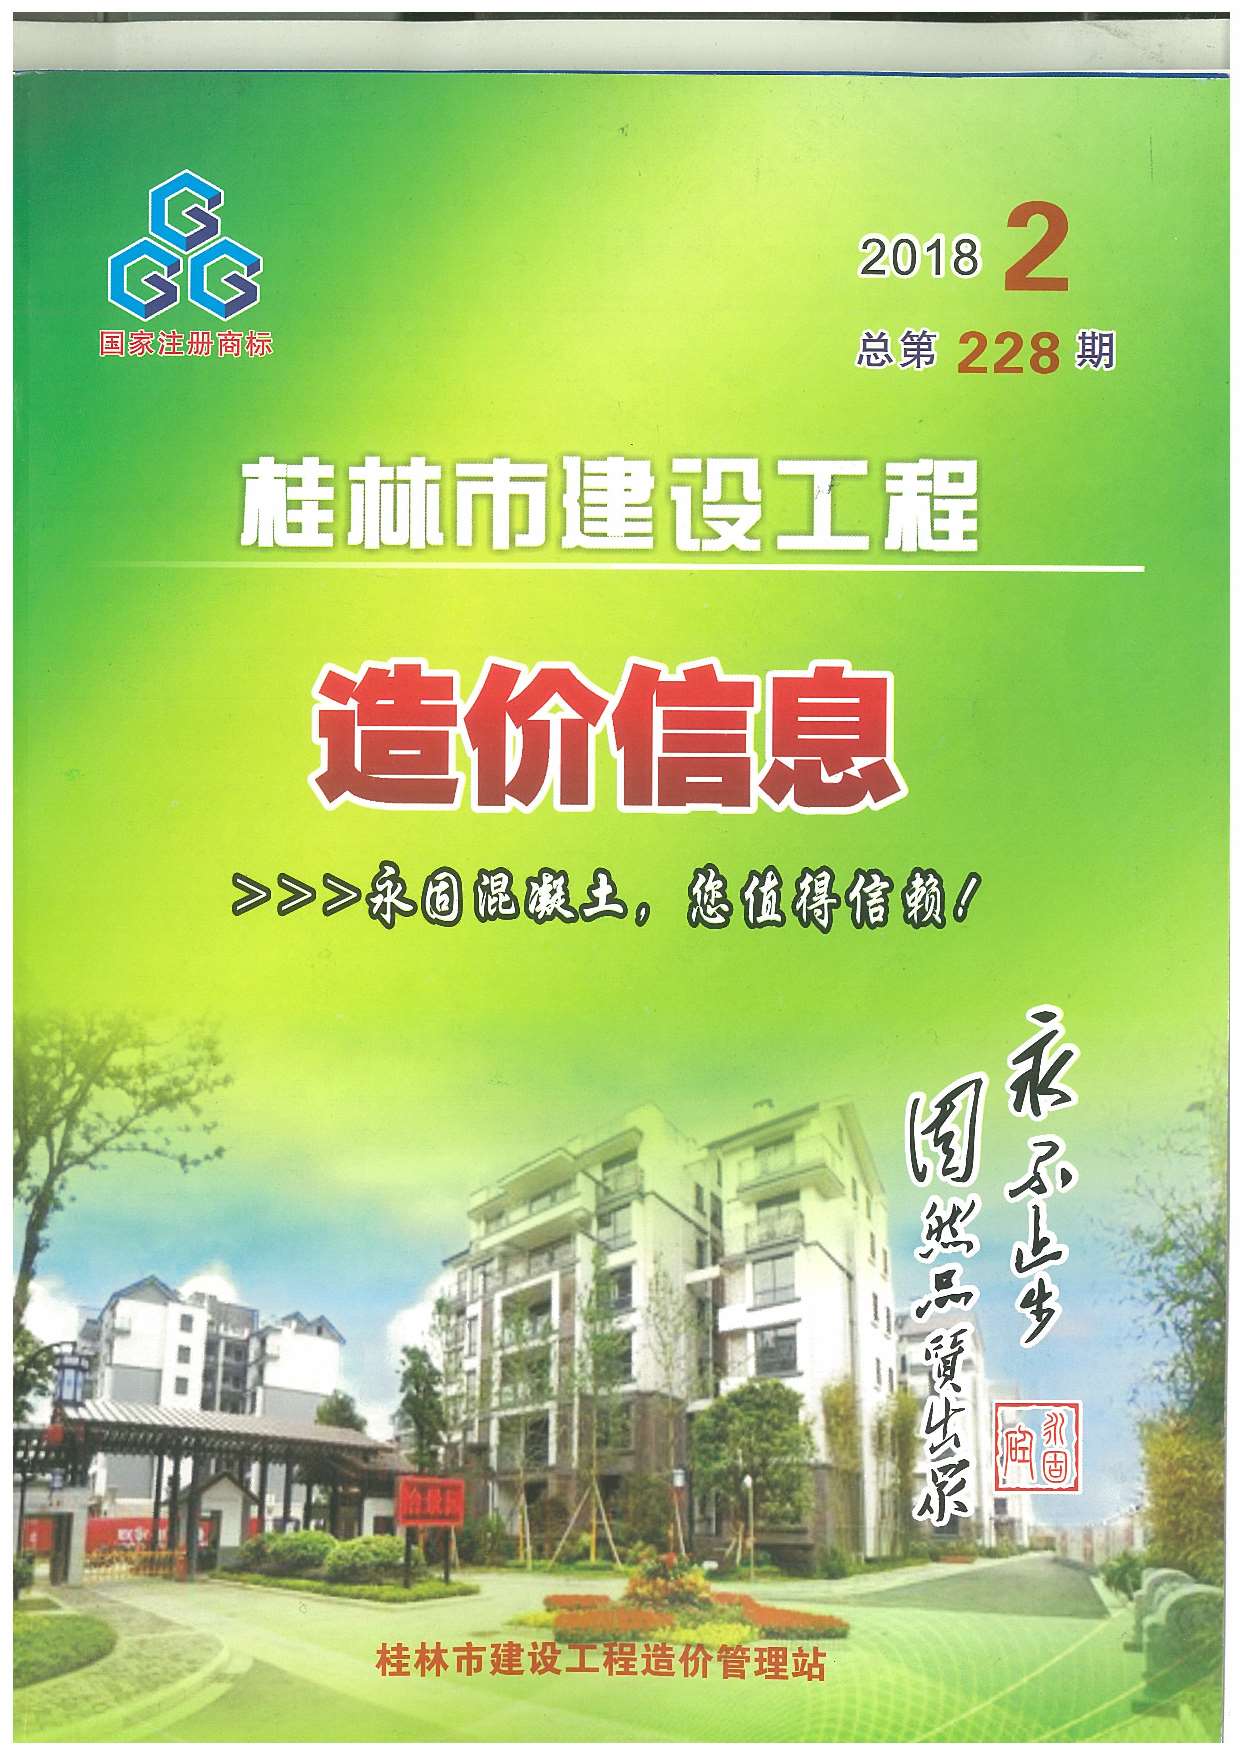 桂林市2018年2月建设工程造价信息